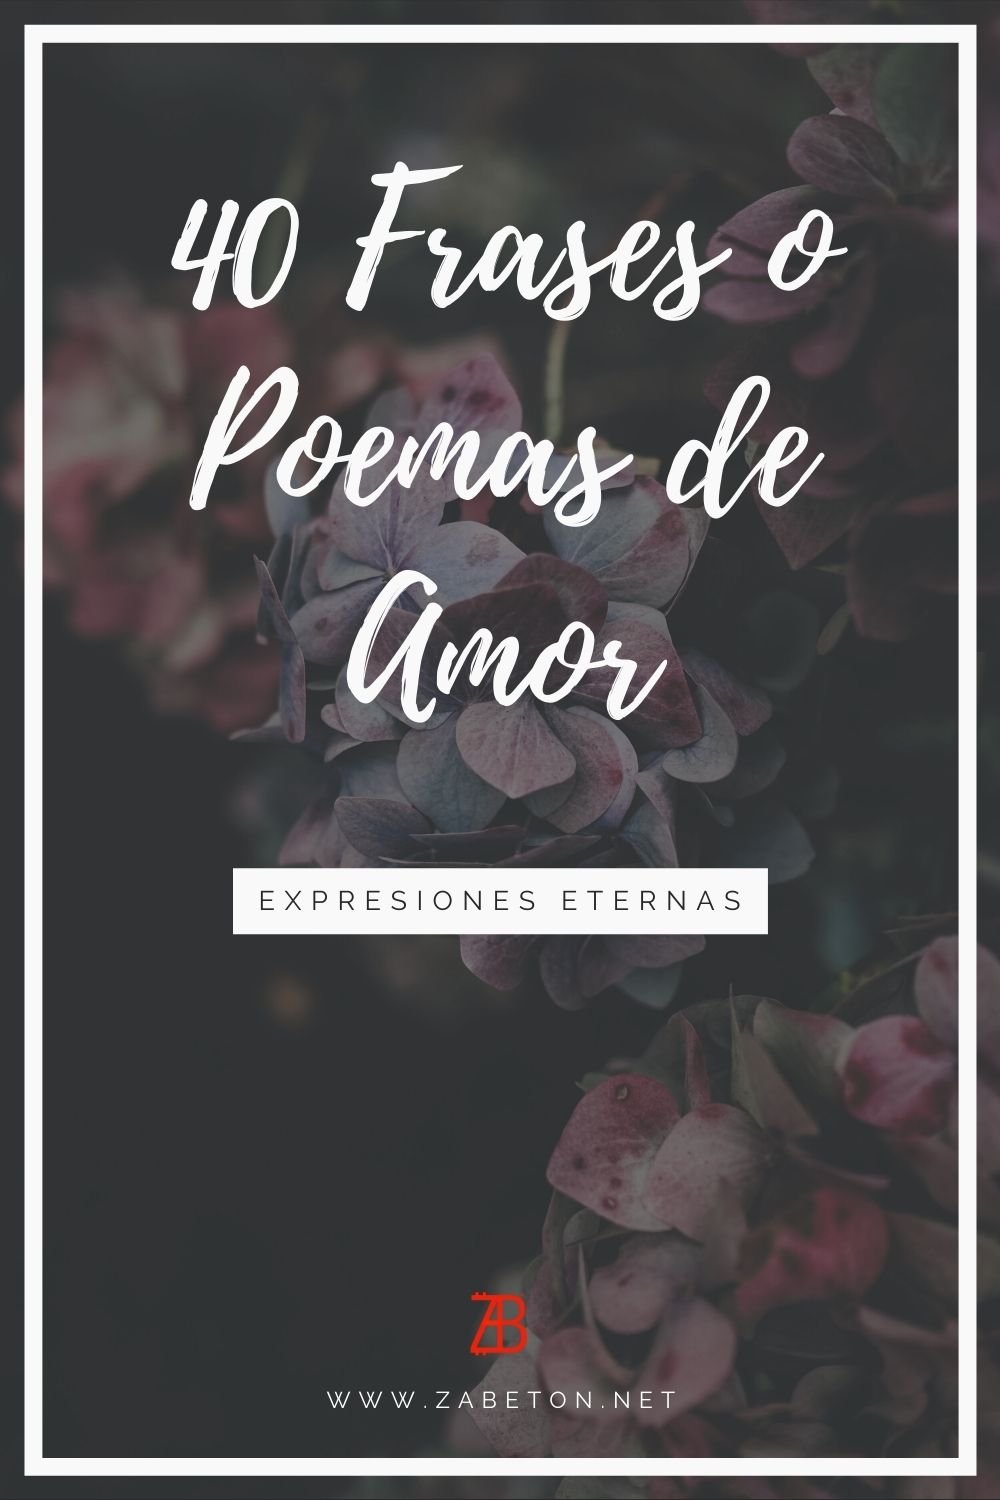 40 Frases o Poemas de Amor 